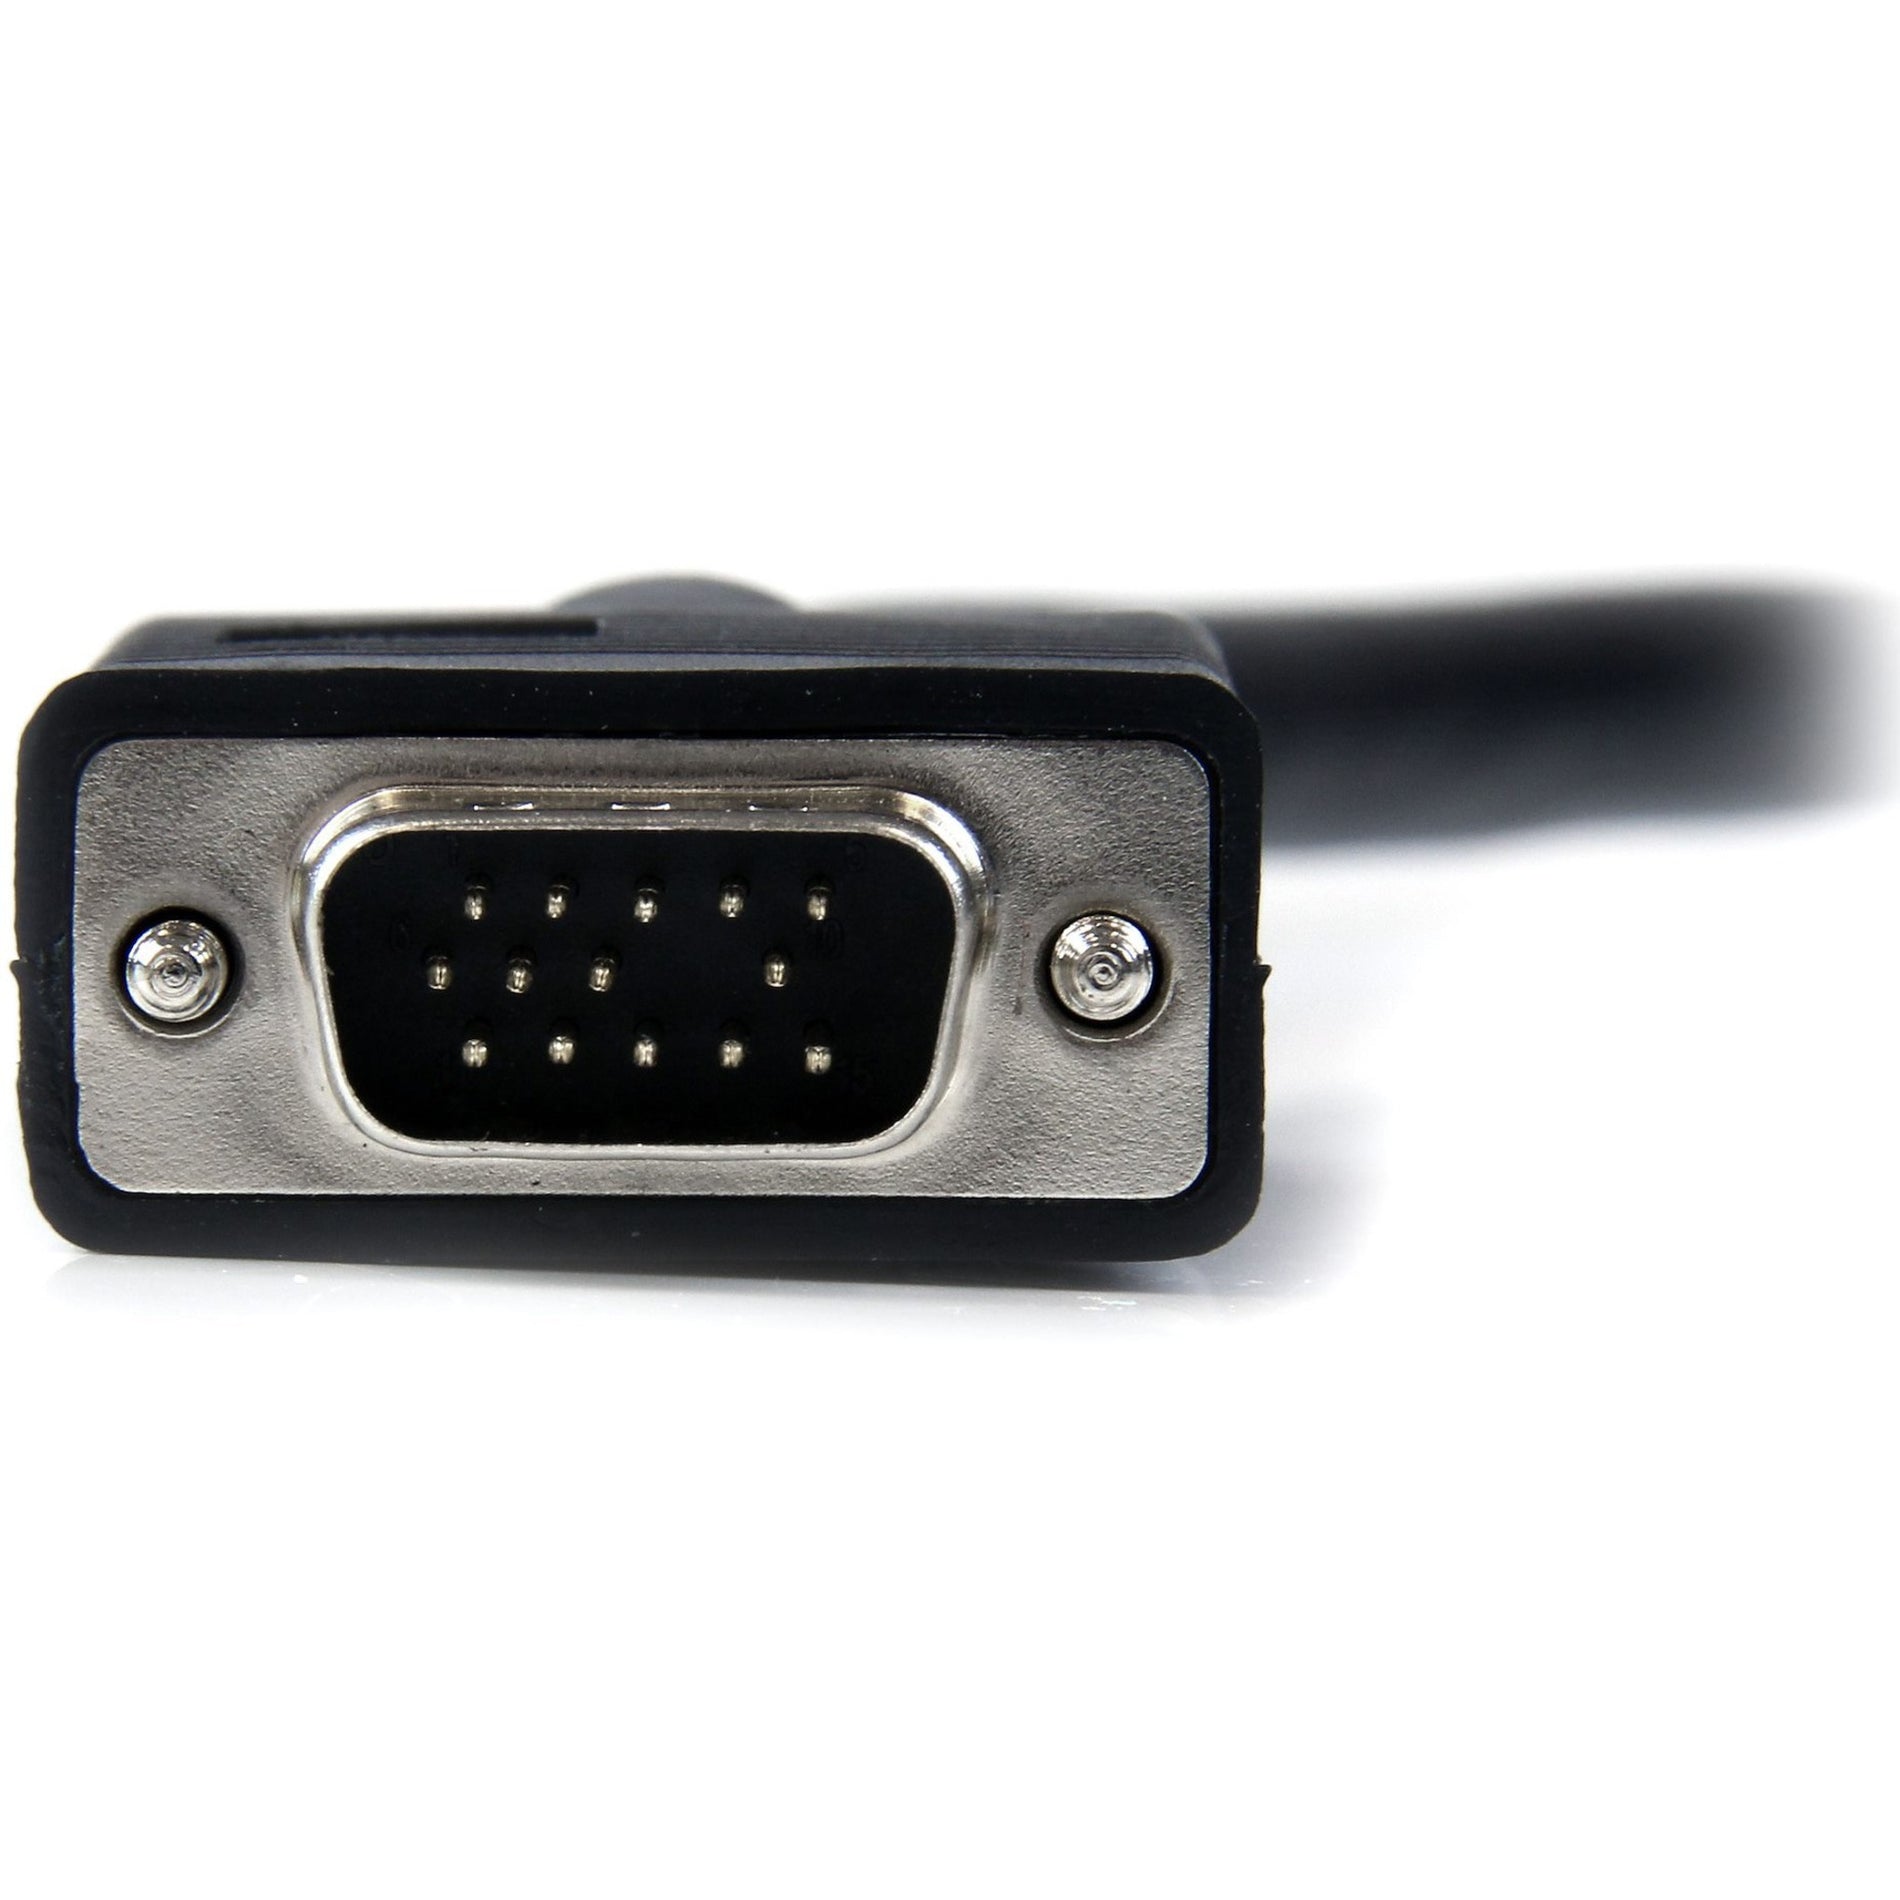 StarTech.com MXT101MMHQ 高分辨率同轴SVGA/VGA显示器电缆，晶莹清晰显示，6英尺